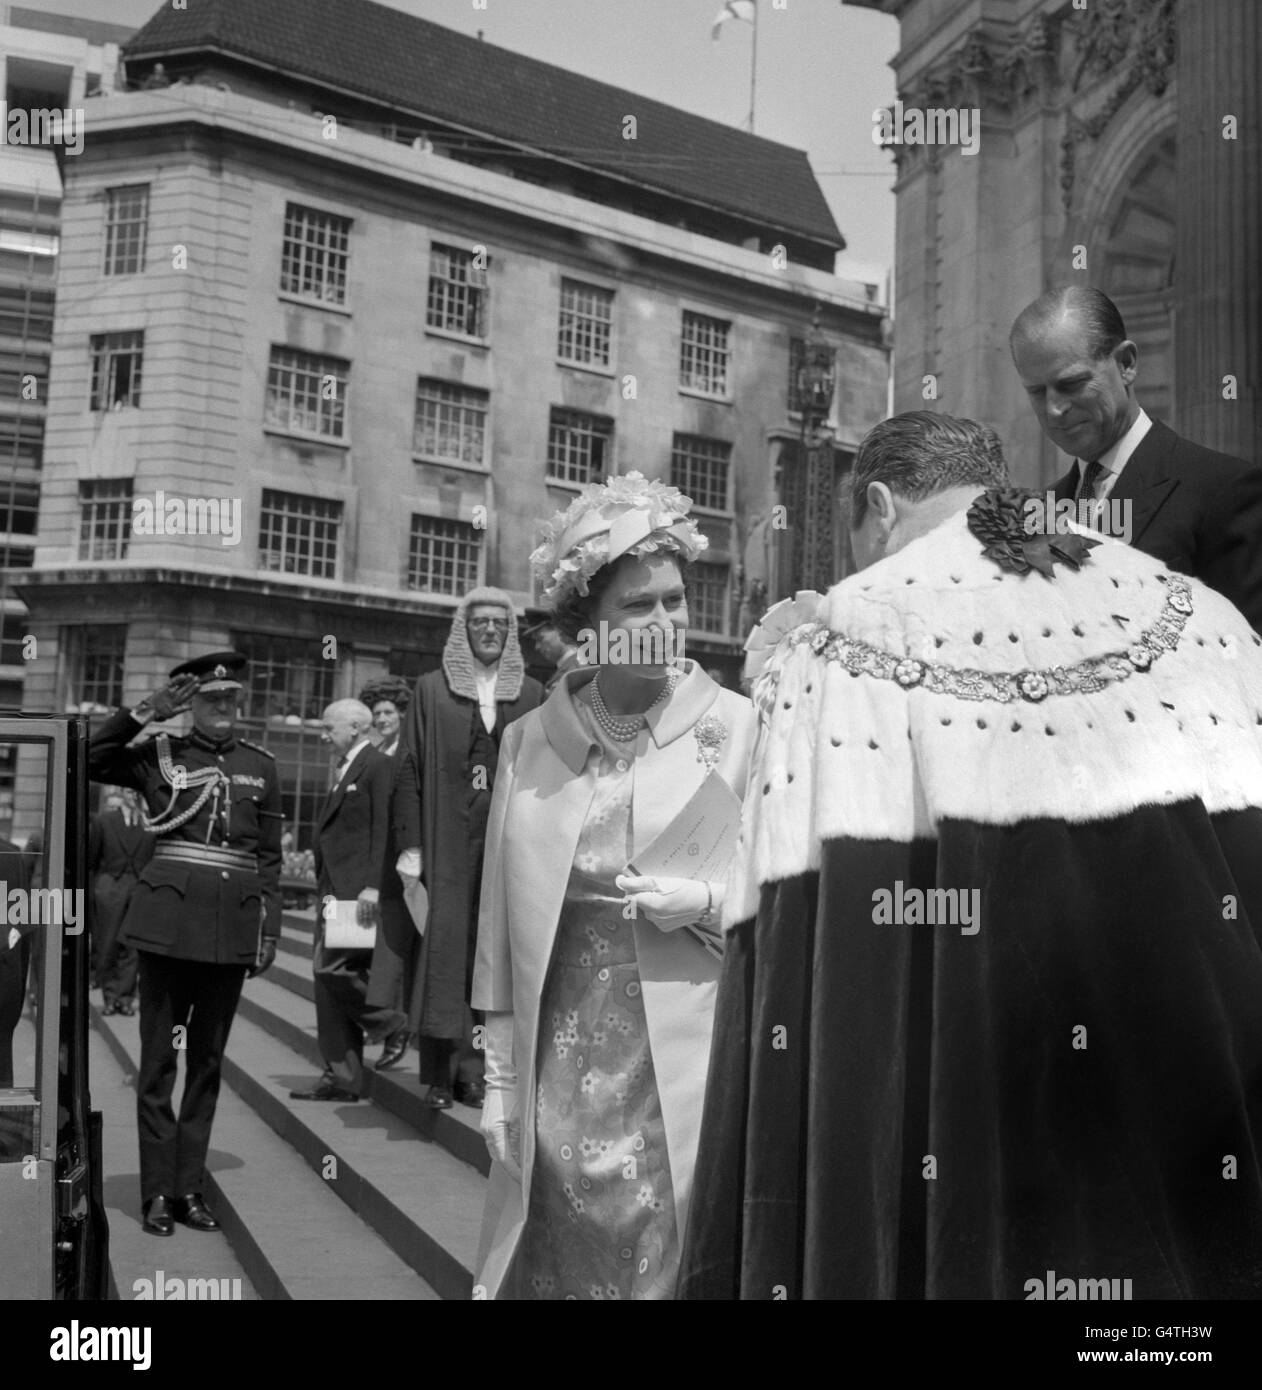 La reine Elizabeth II, suivie du duc d'Édimbourg, quitte la cathédrale Saint-Paul après le service de commémoration du 750e anniversaire de la Magna Carta. Banque D'Images